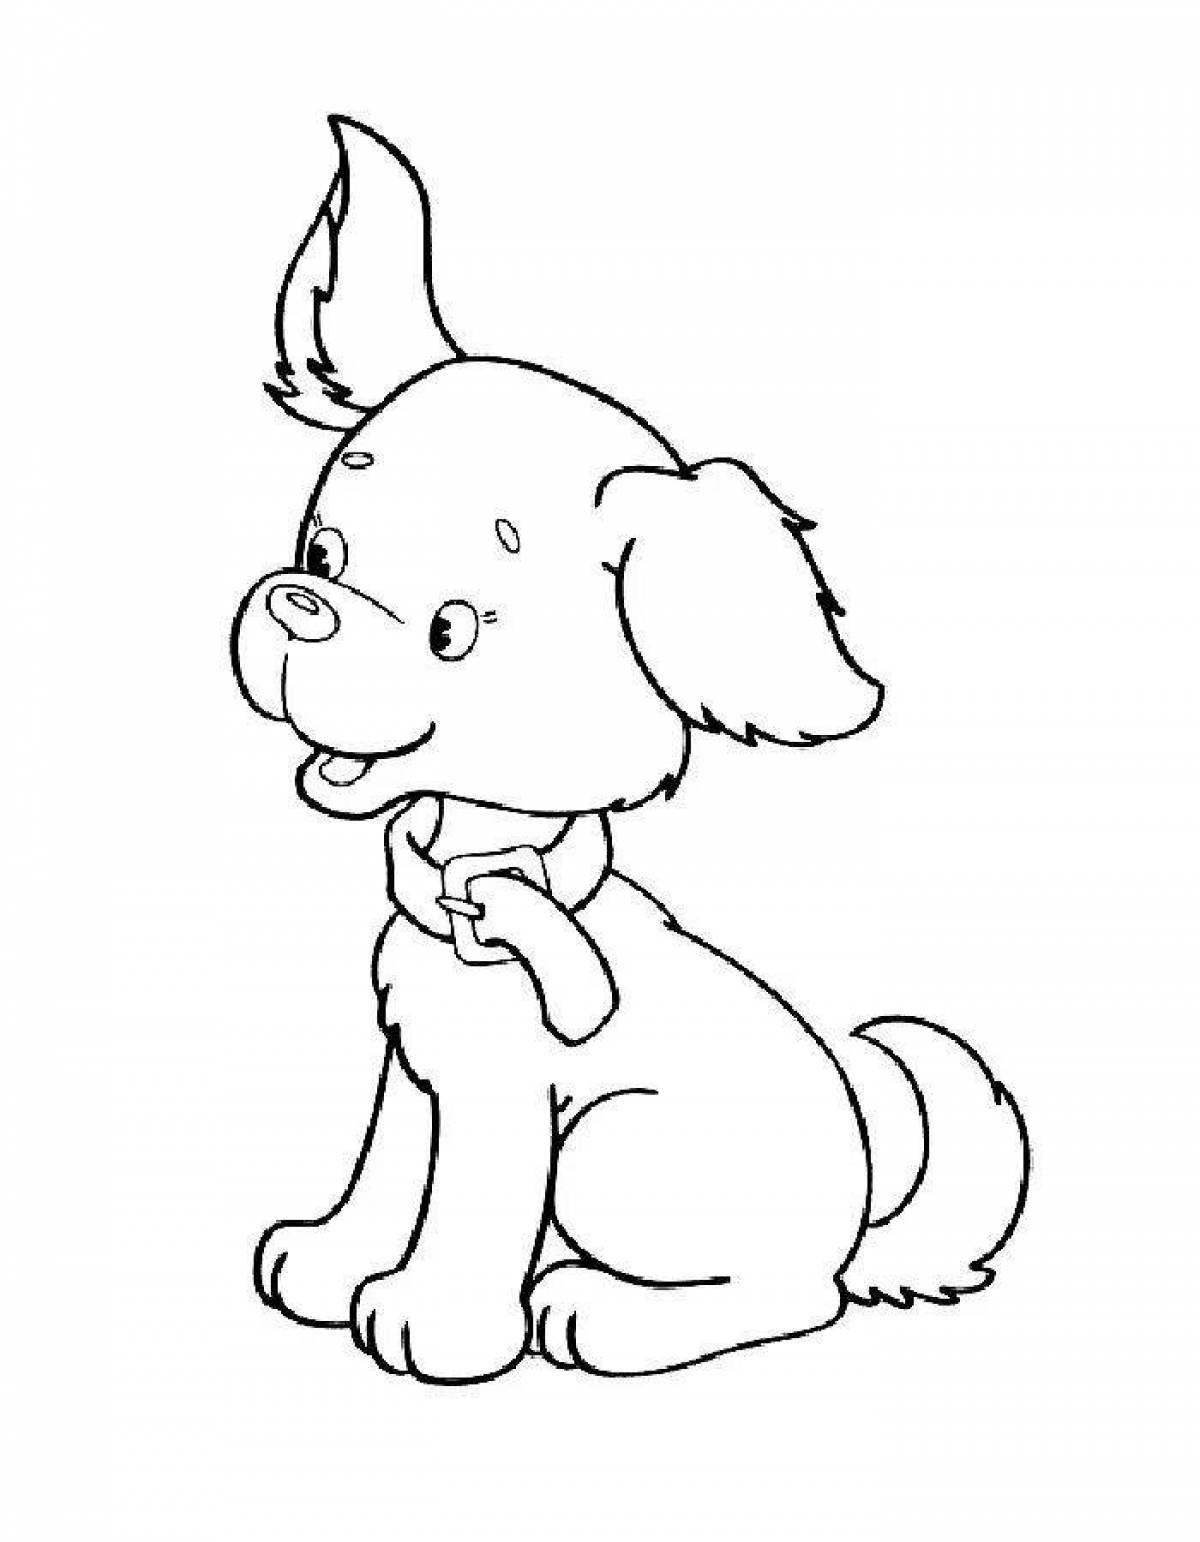 Zani dog drawing